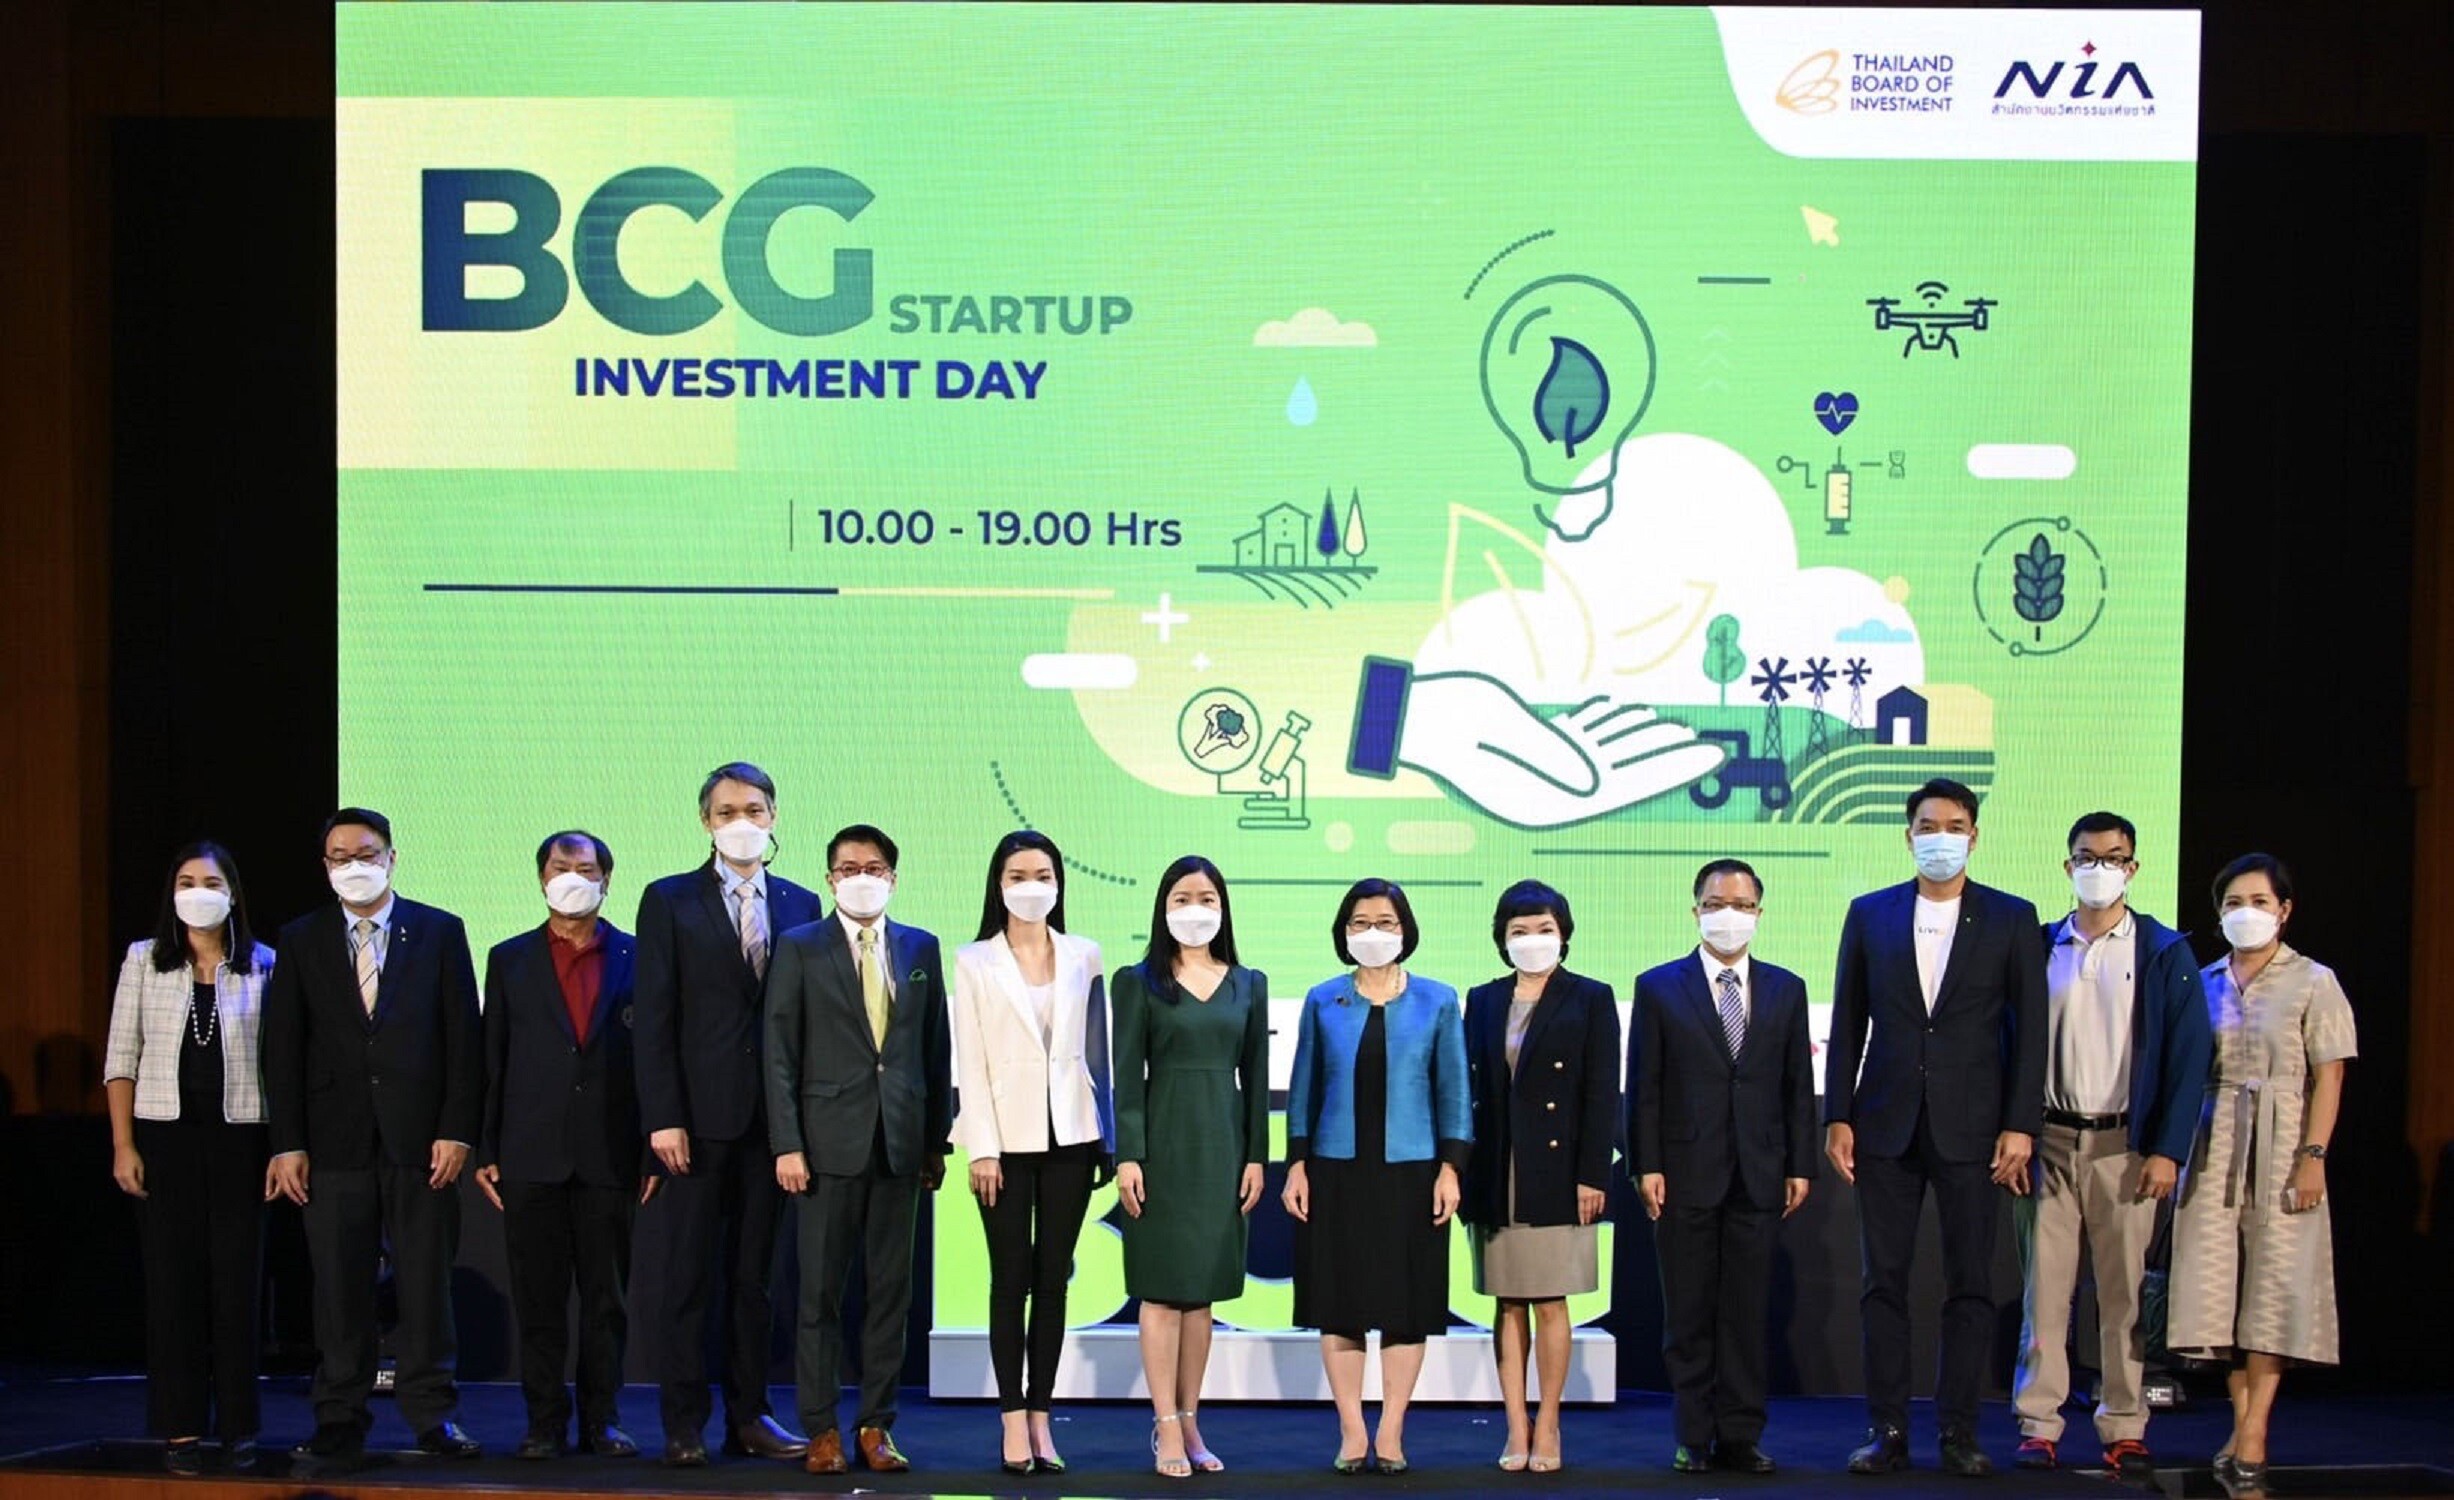 เอ็นไอเอ - บีโอไอระดม 1,000 บีซีจีสตาร์ทอัพร่วมมหกรรม "BCG Startup Investment Day"  หนุนคลื่นลูกใหม่เศรษฐกิจรับลงทุน พร้อมคาดภายใน 5 ปีขยายตัว 4.4 ล้านล้าน